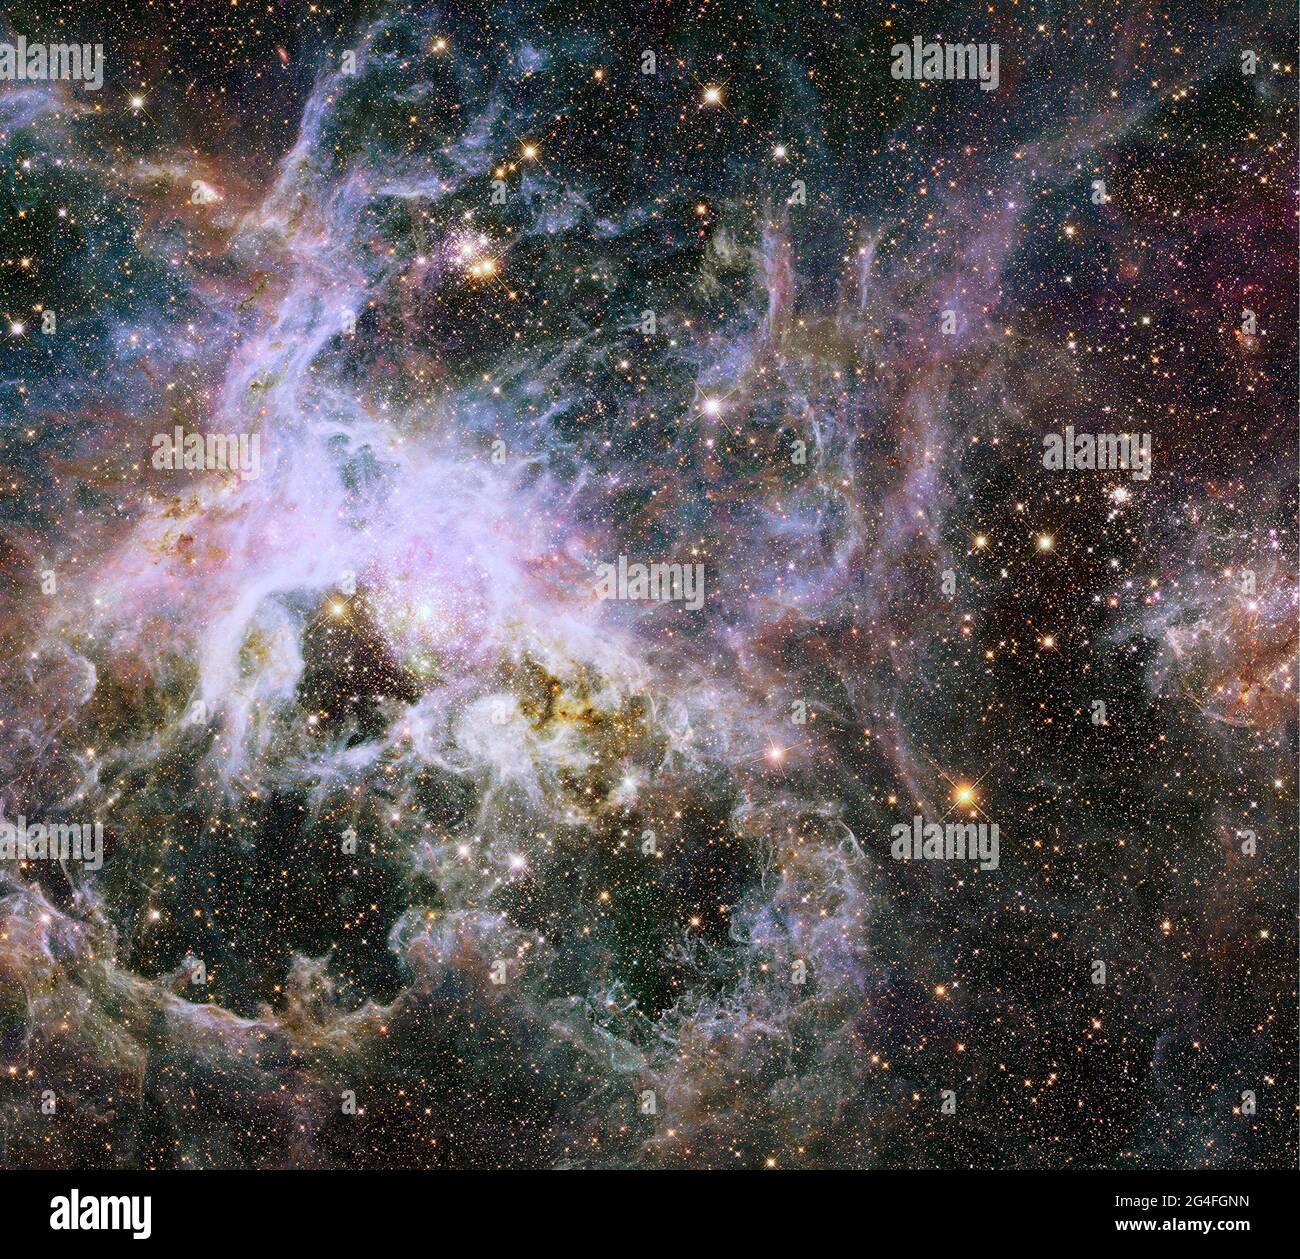 TRANTULAR NEBULA, ESPACIO EXTERIOR - 09 de enero de 2014 - Al igual que levantar un velo gigante, la visión casi infrarroja del Telescopio Espacial Hubble de la NASA descubre un daz Foto de stock